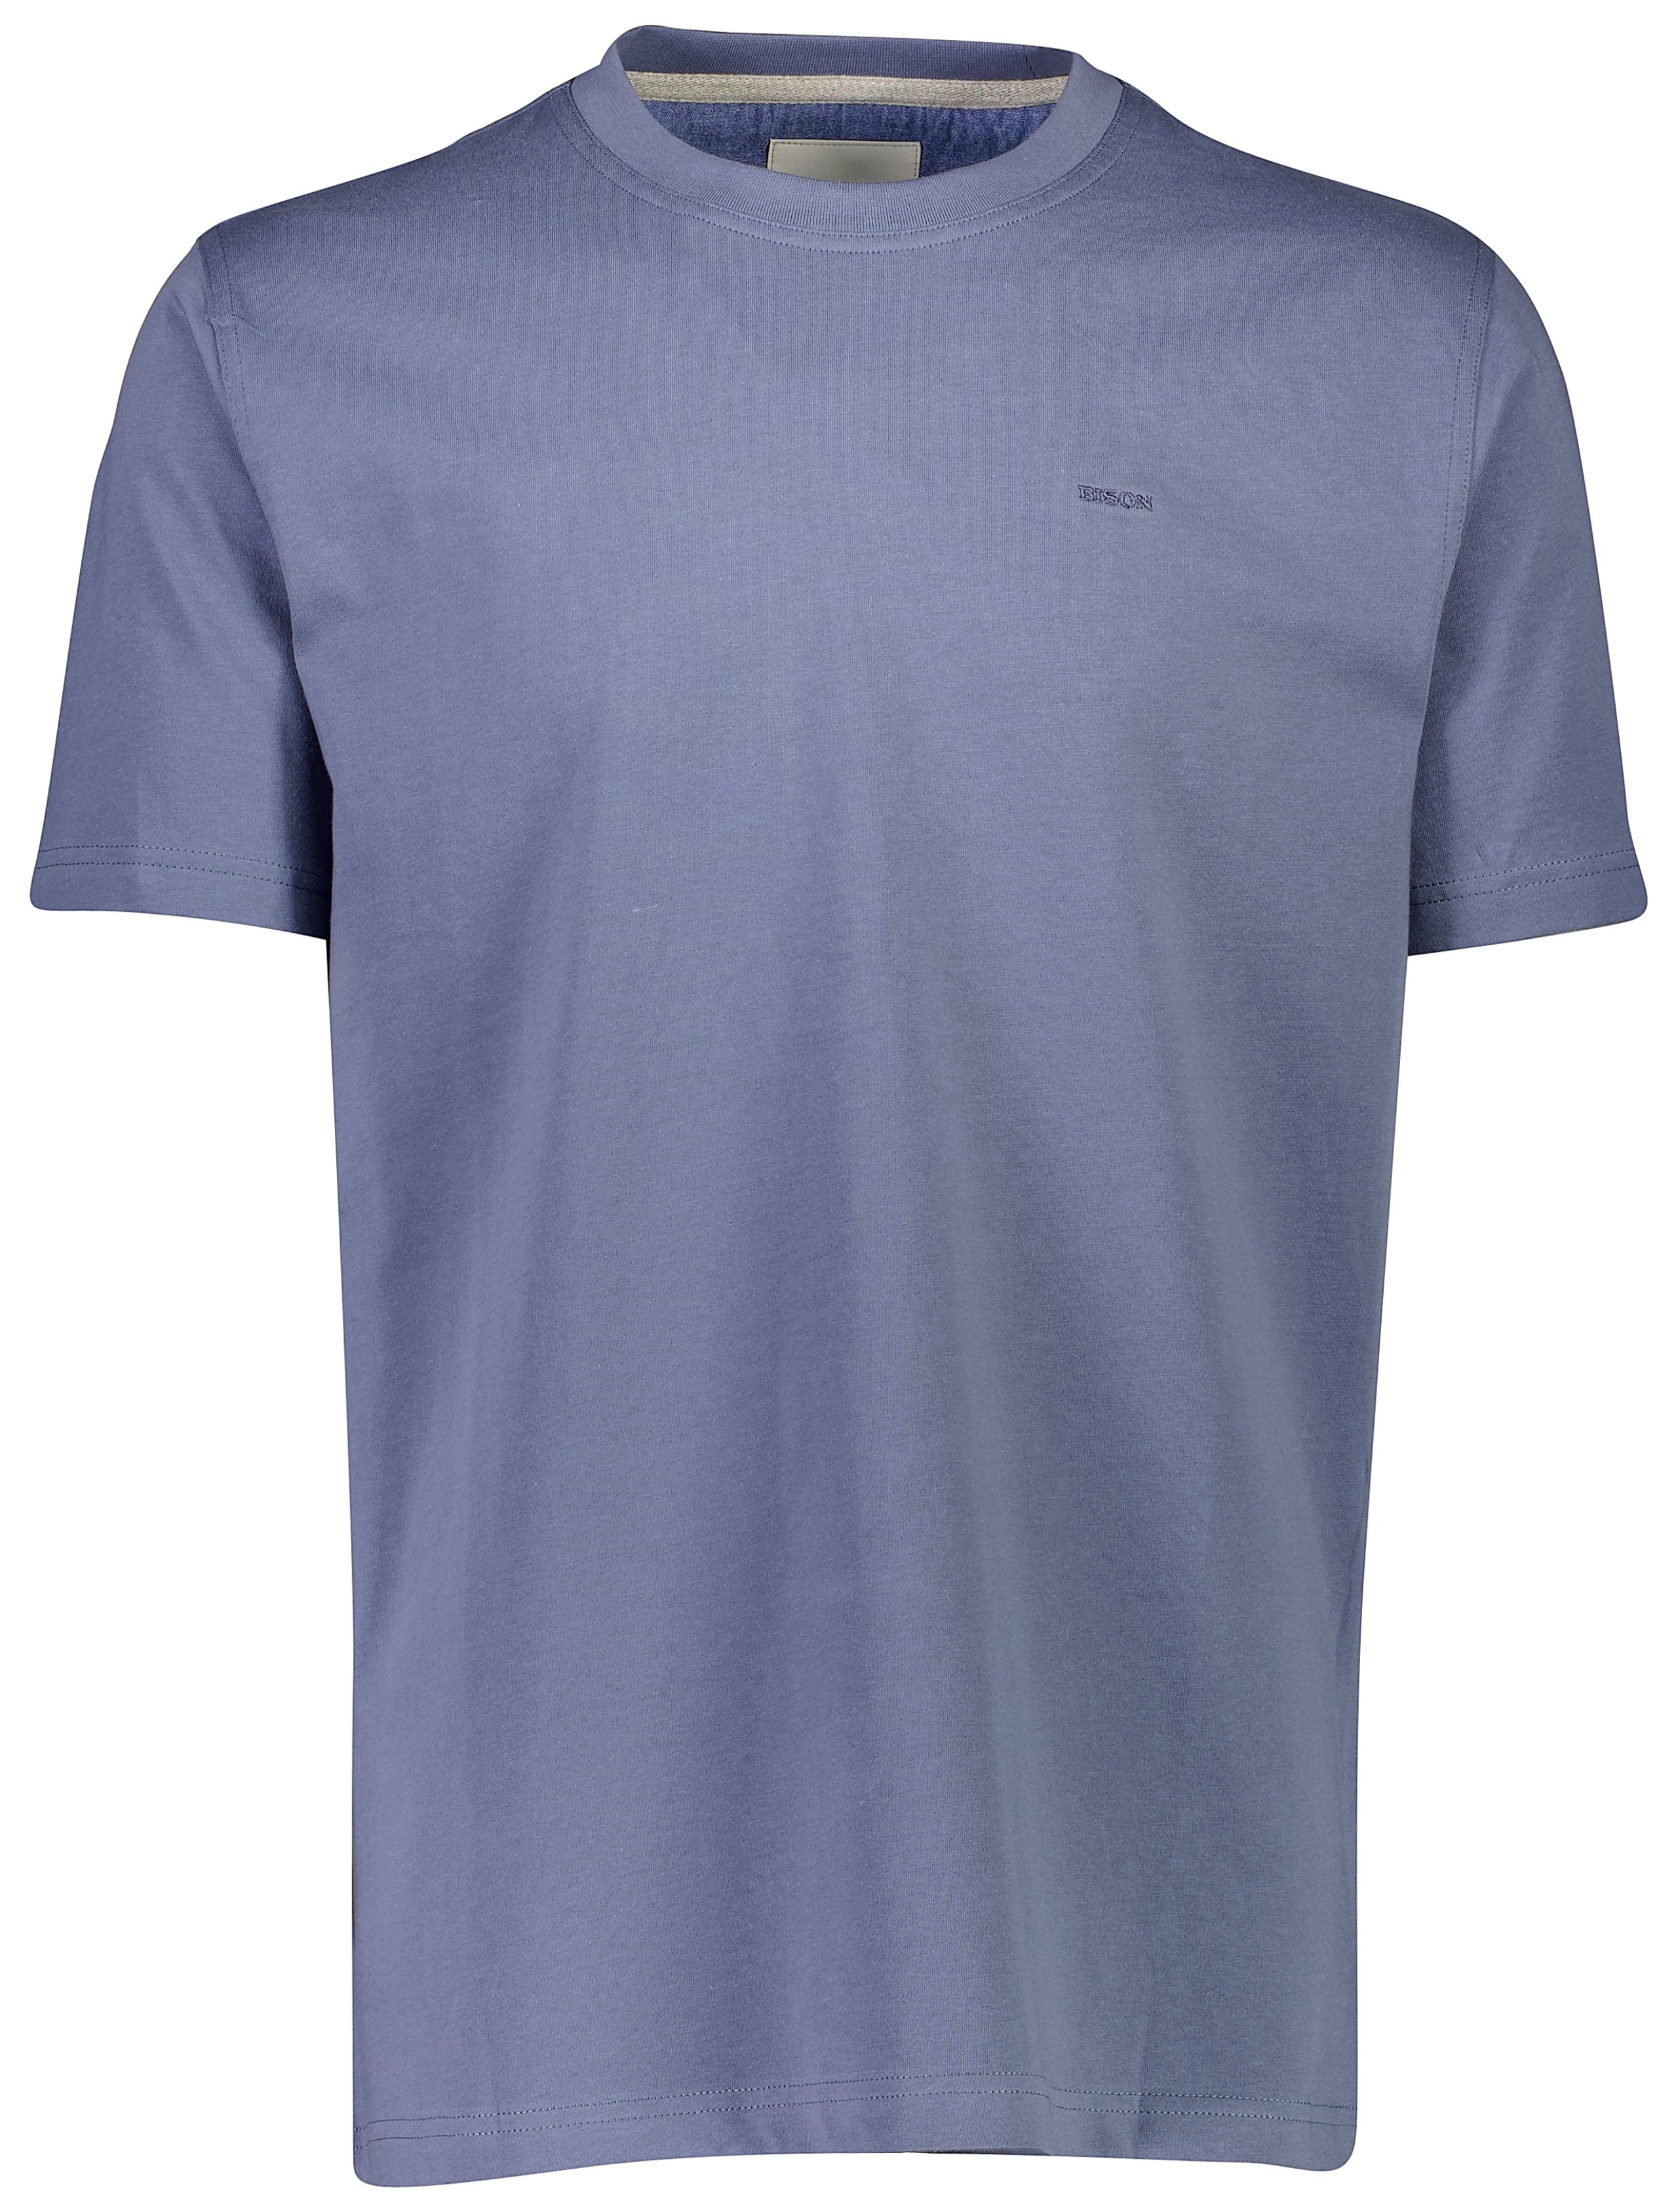 Bison T-shirt blå / steel blue